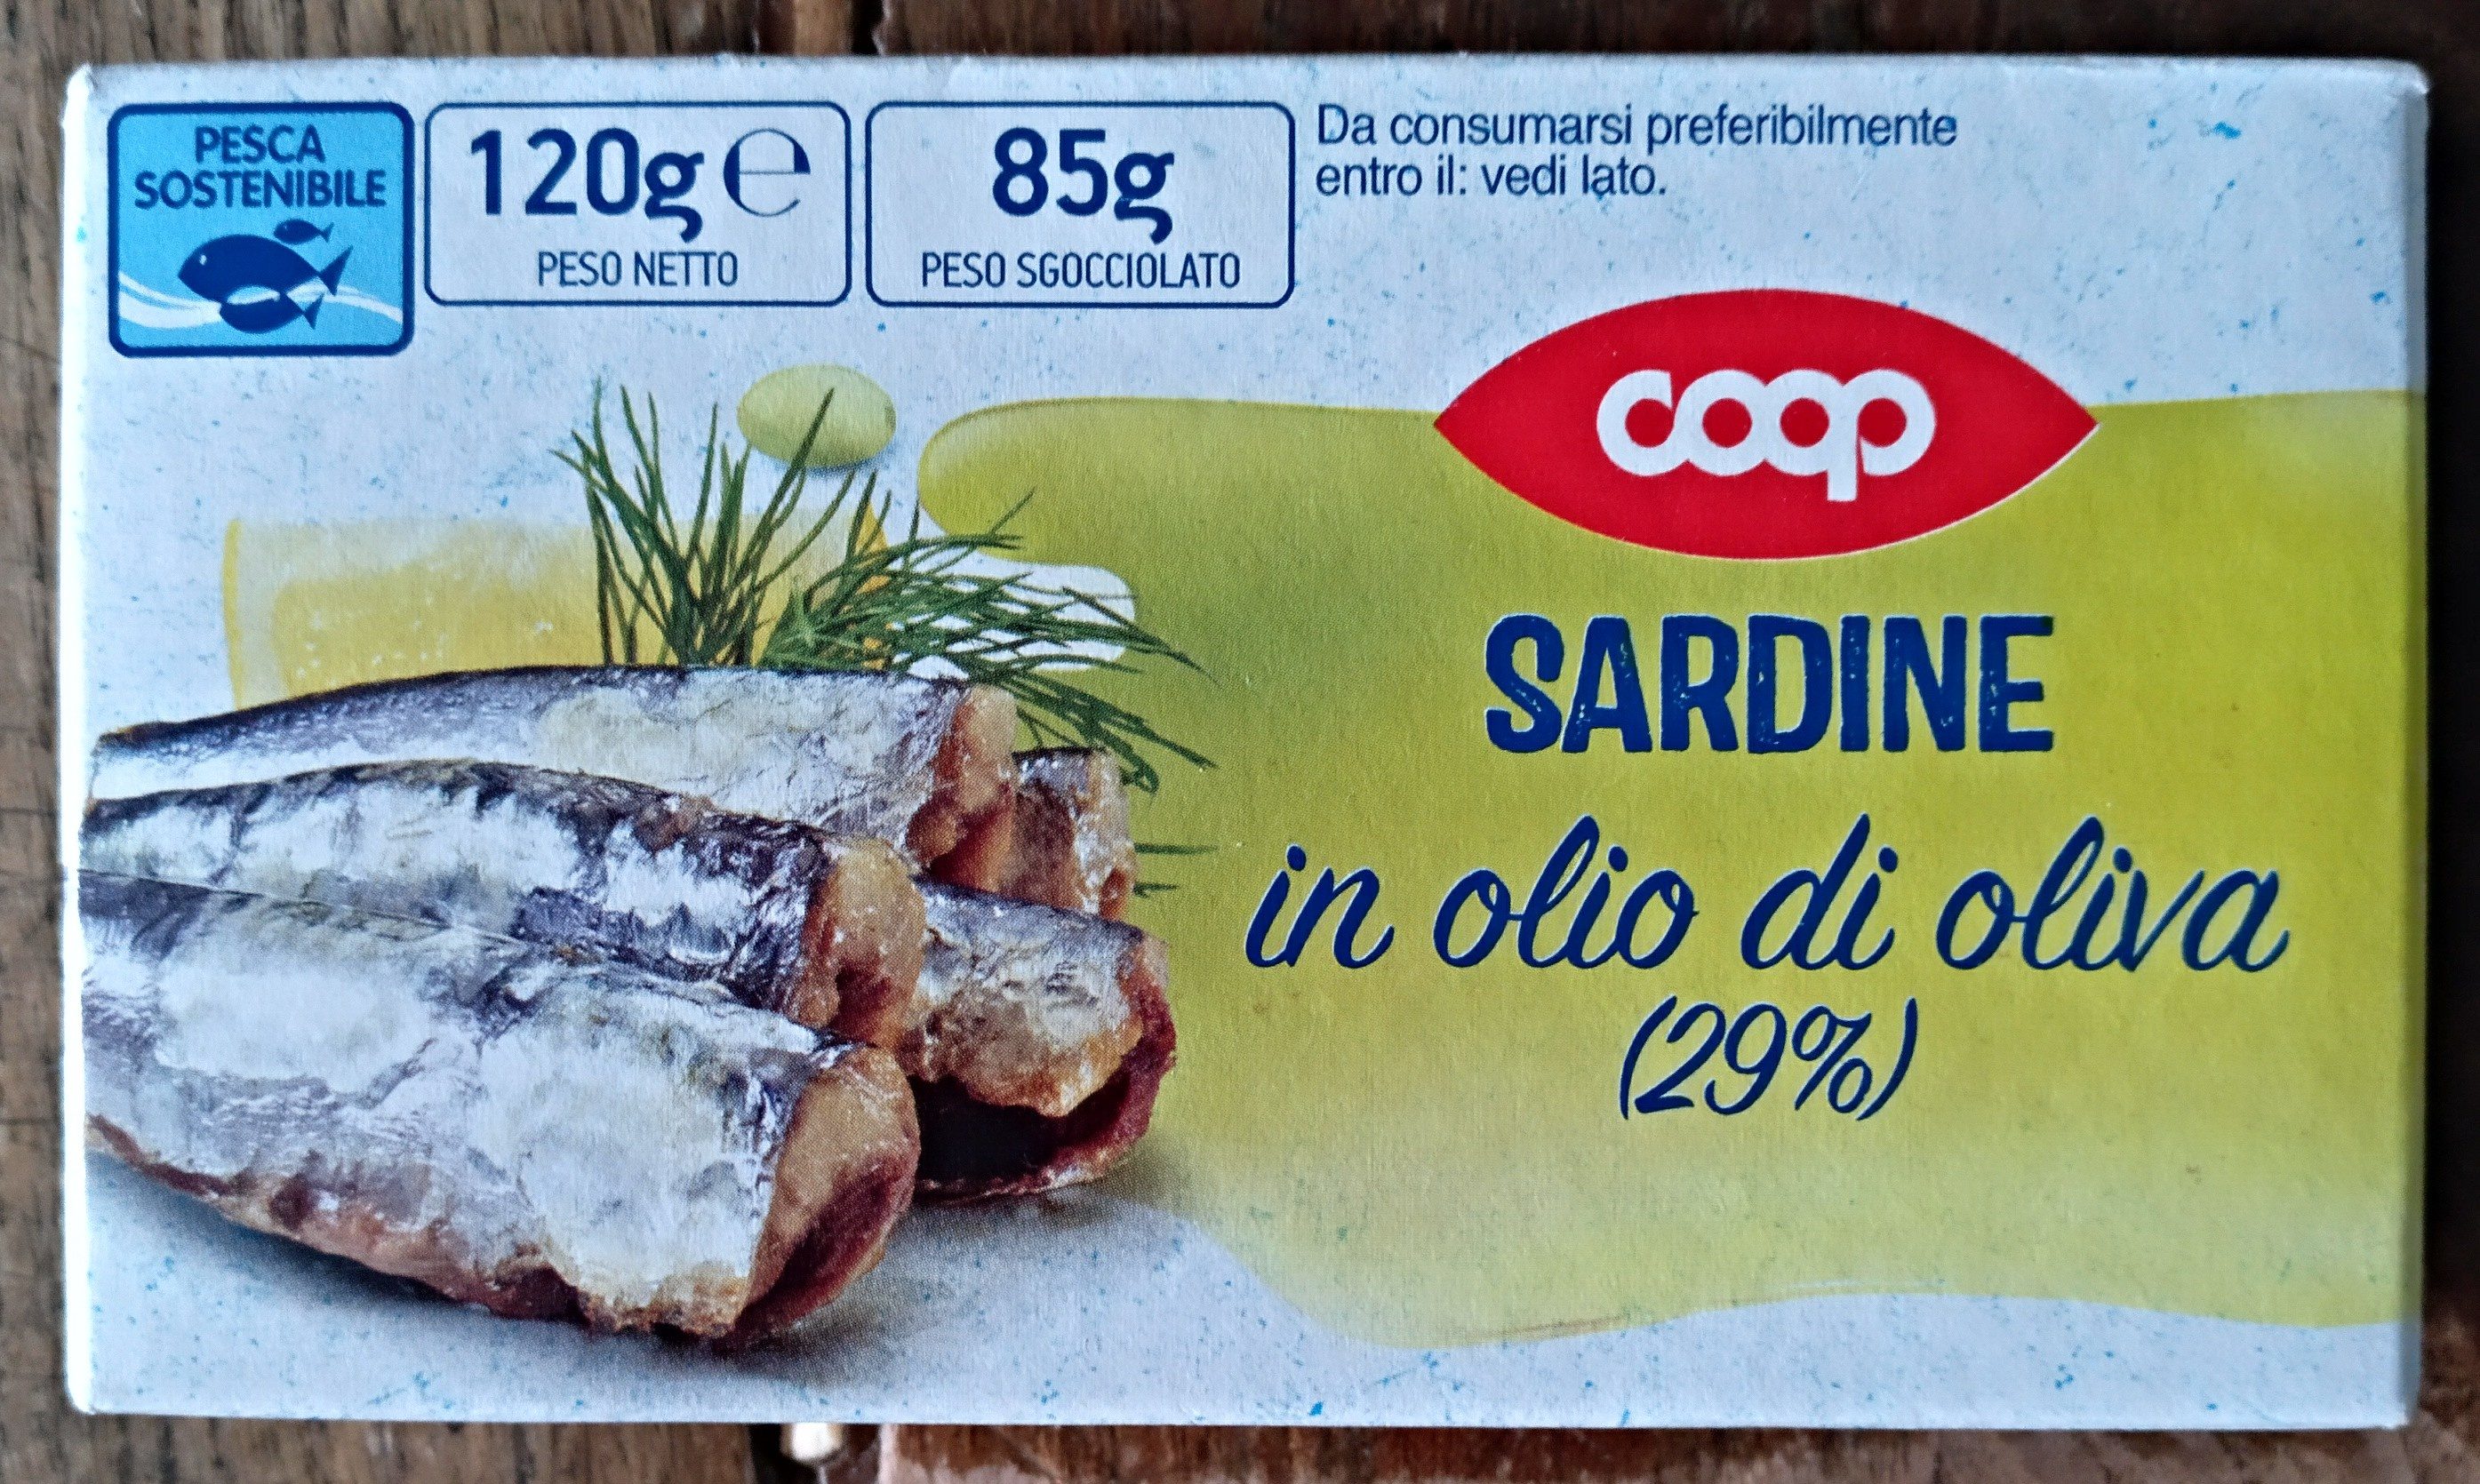 sardine in olio di oliva - Product - fi